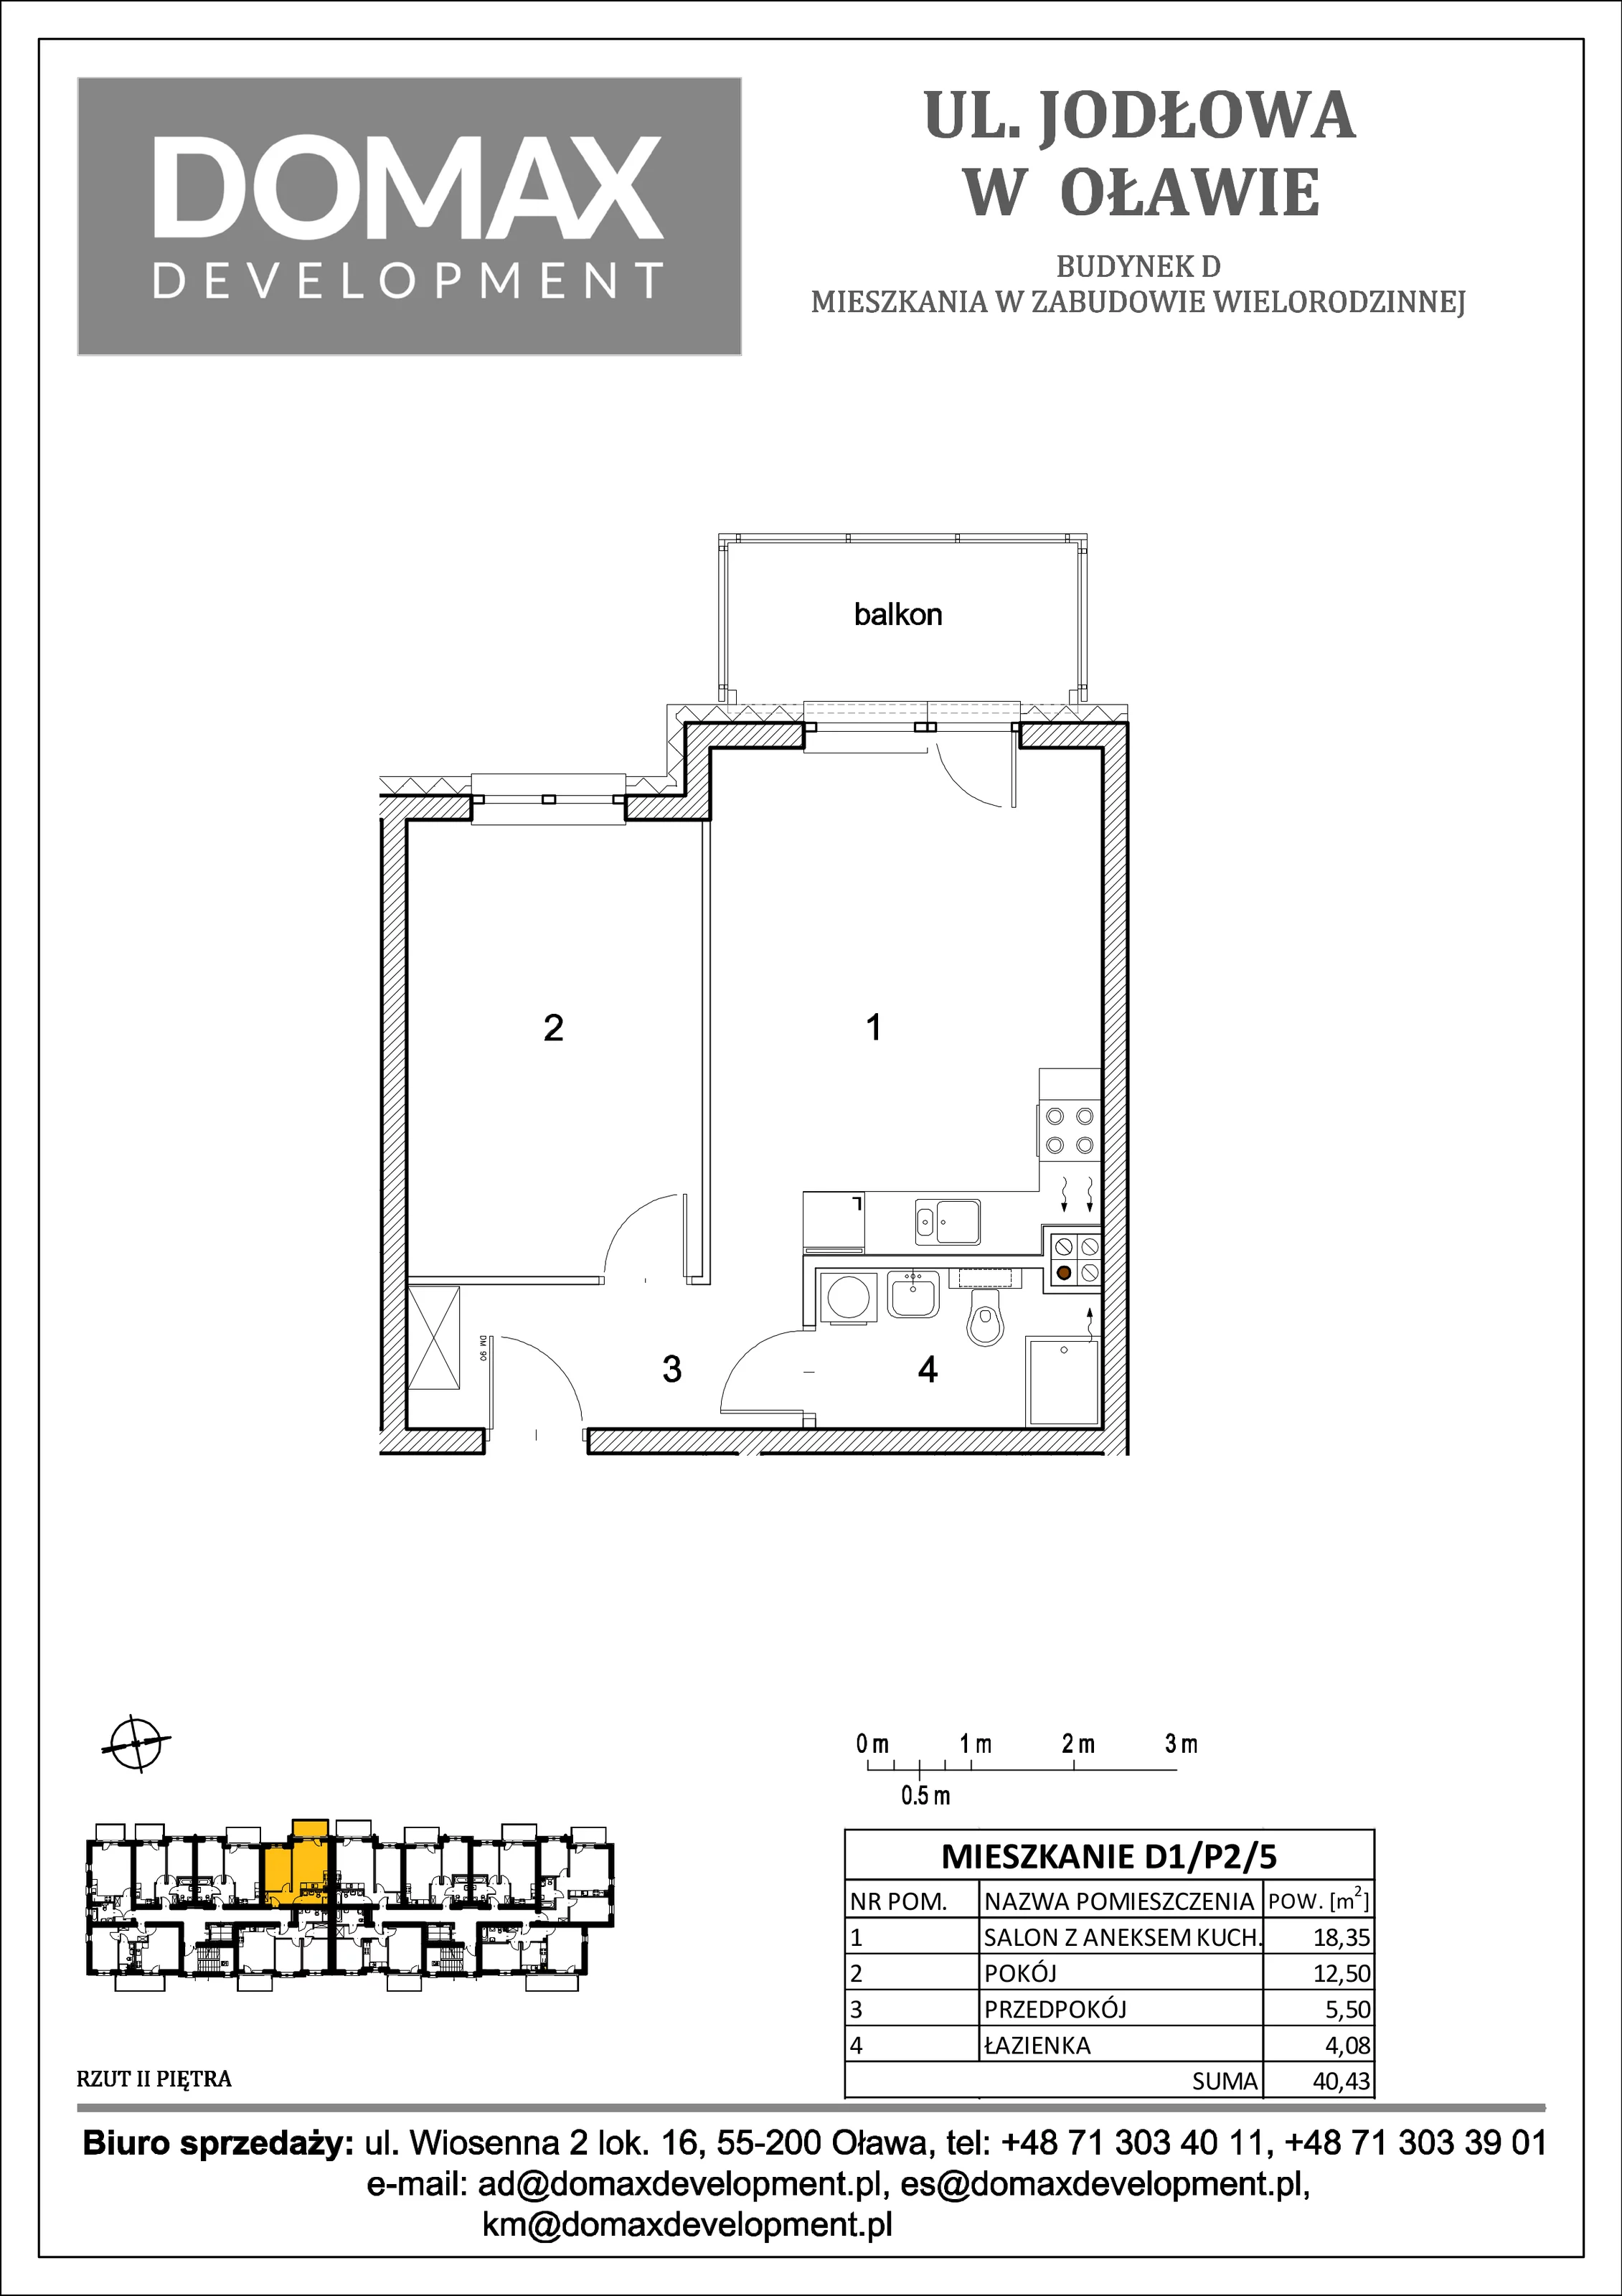 Mieszkanie 40,43 m², piętro 2, oferta nr D1/P2/5, Osiedle Jodłowa etap II, Oława, ul. Jodłowa